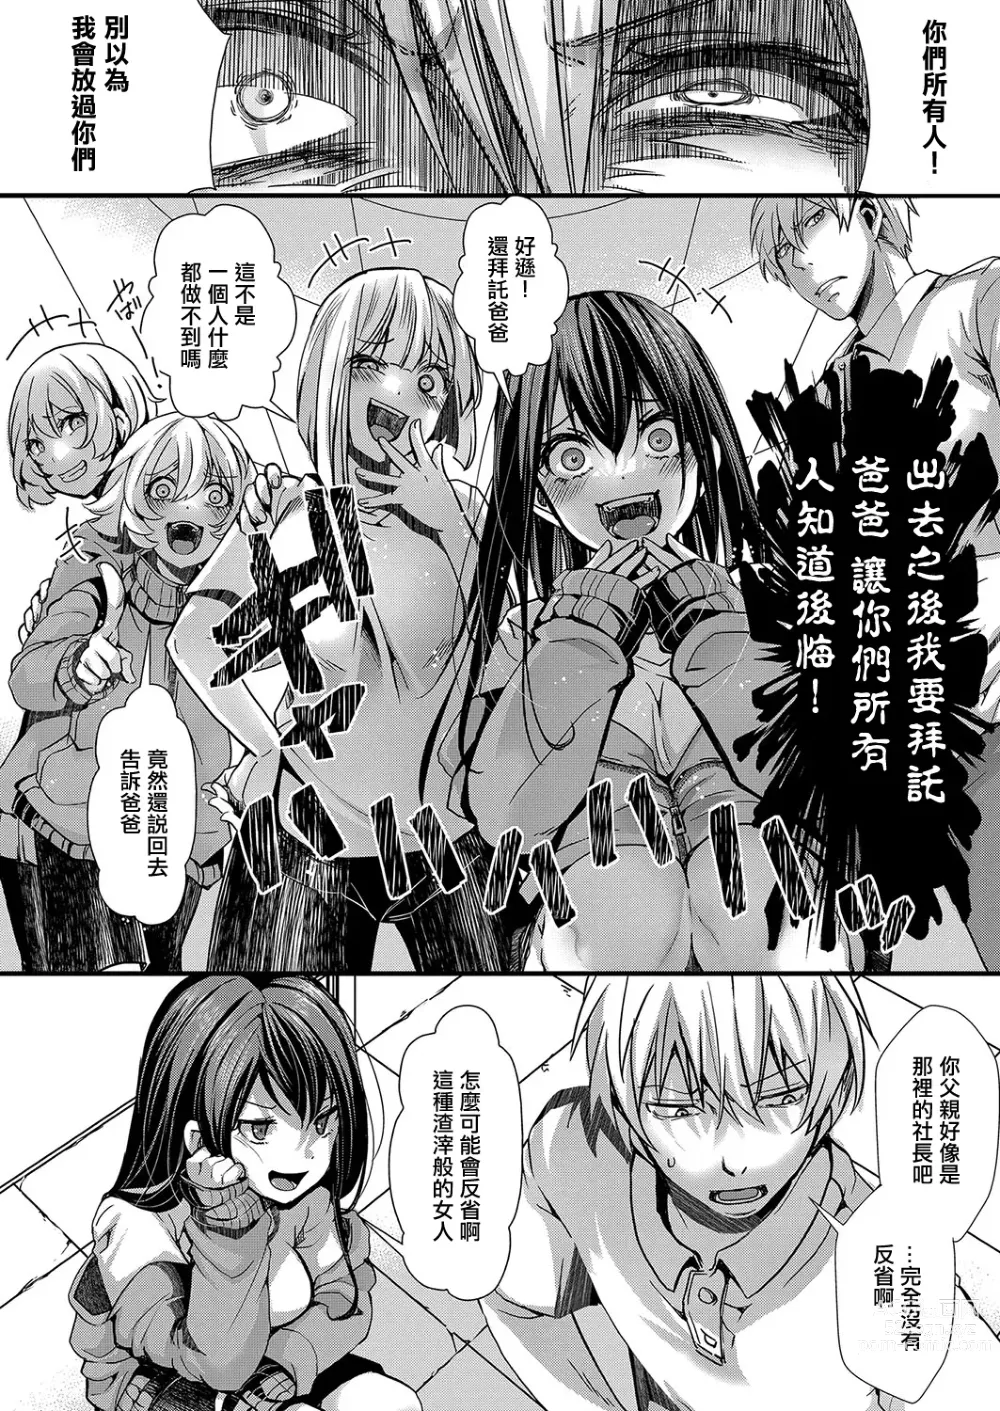 Page 24 of manga Mesuana no Kouseiin 1-jigenme